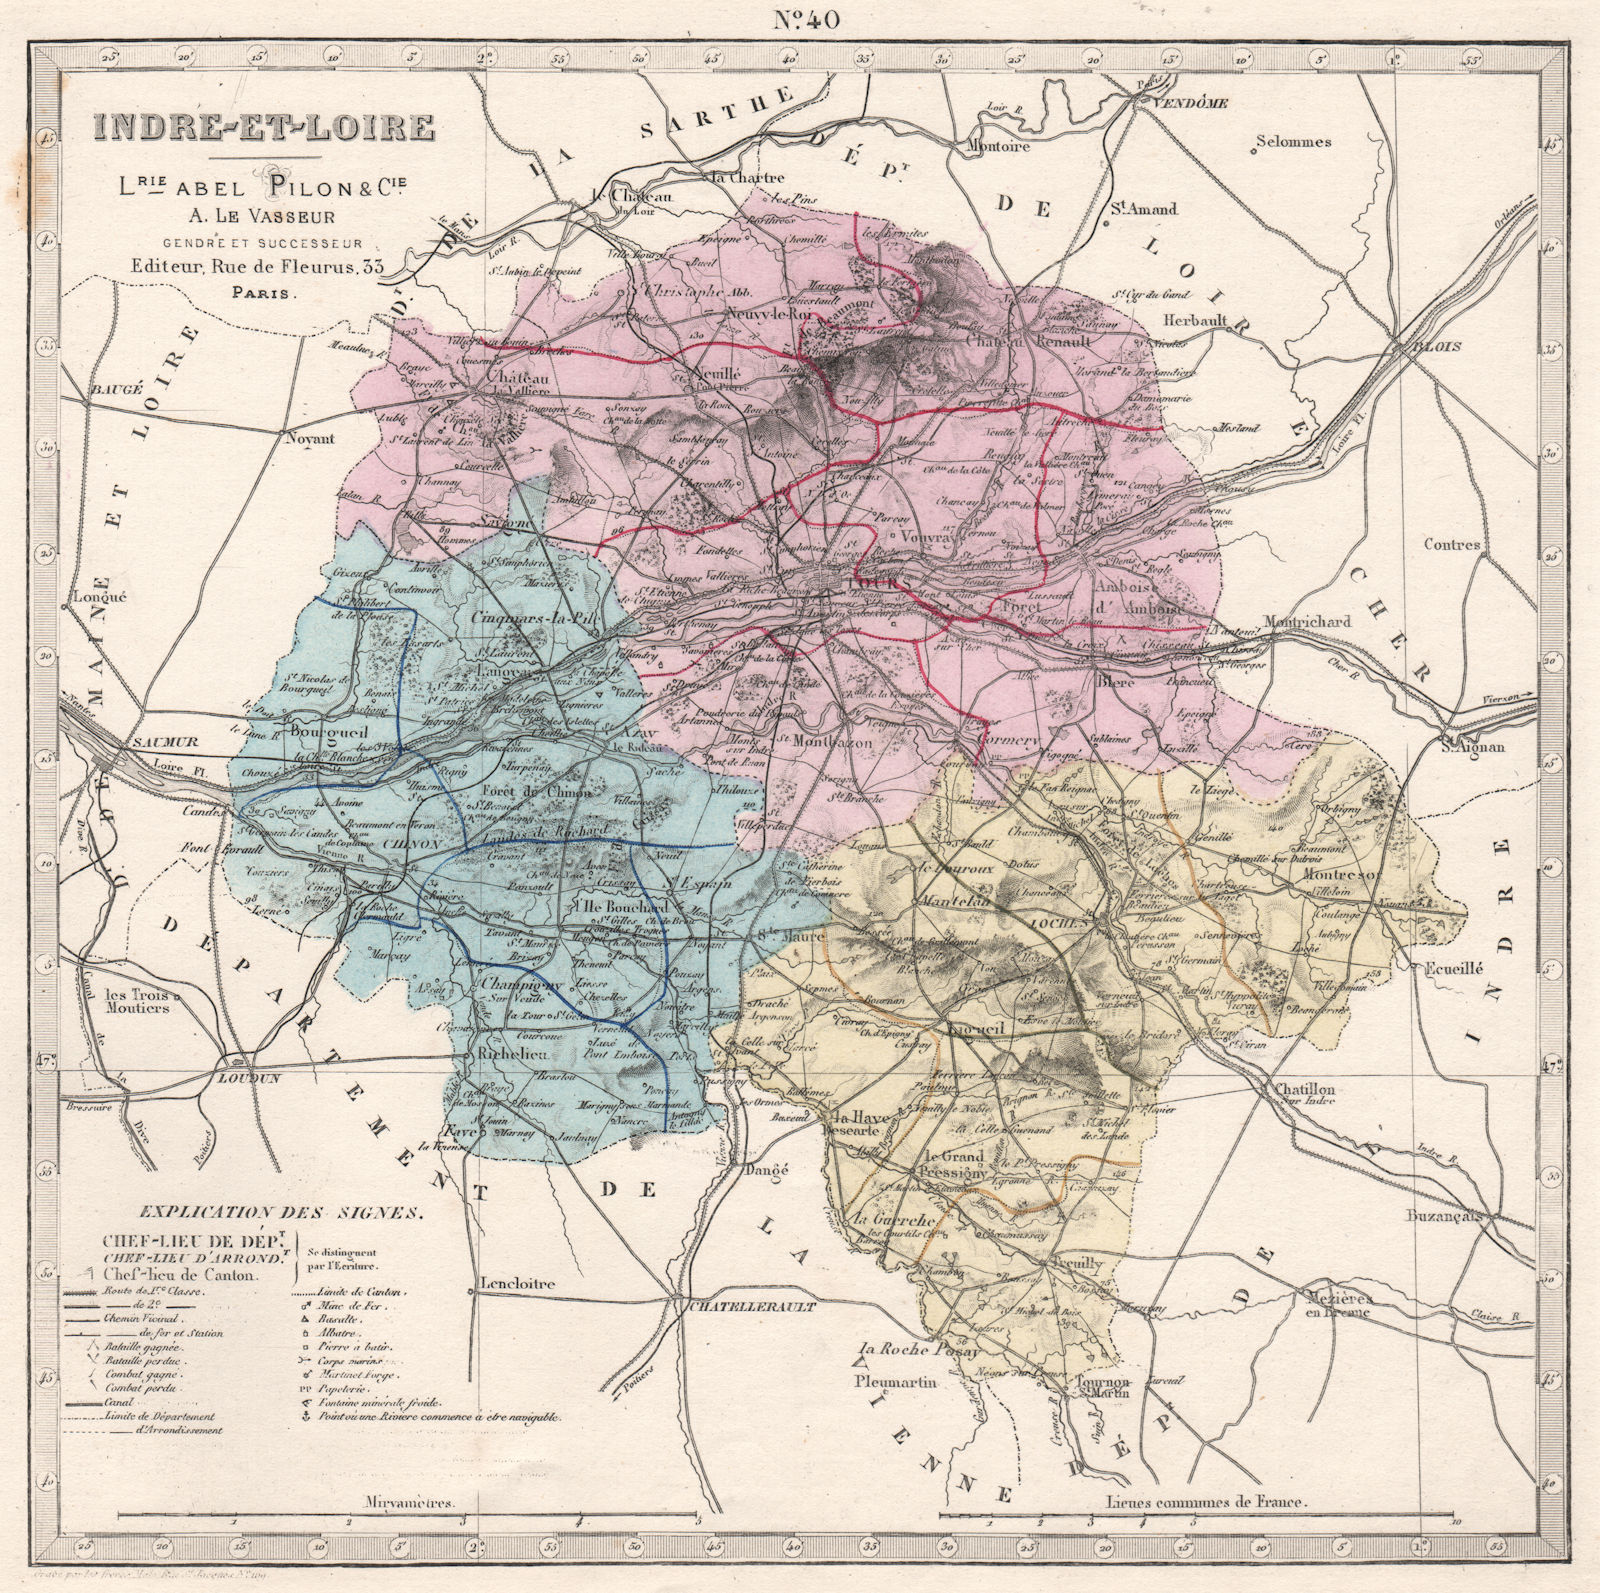 INDRE-ET-LOIRE department. Battles/dates resources minerals. LE VASSEUR 1876 map